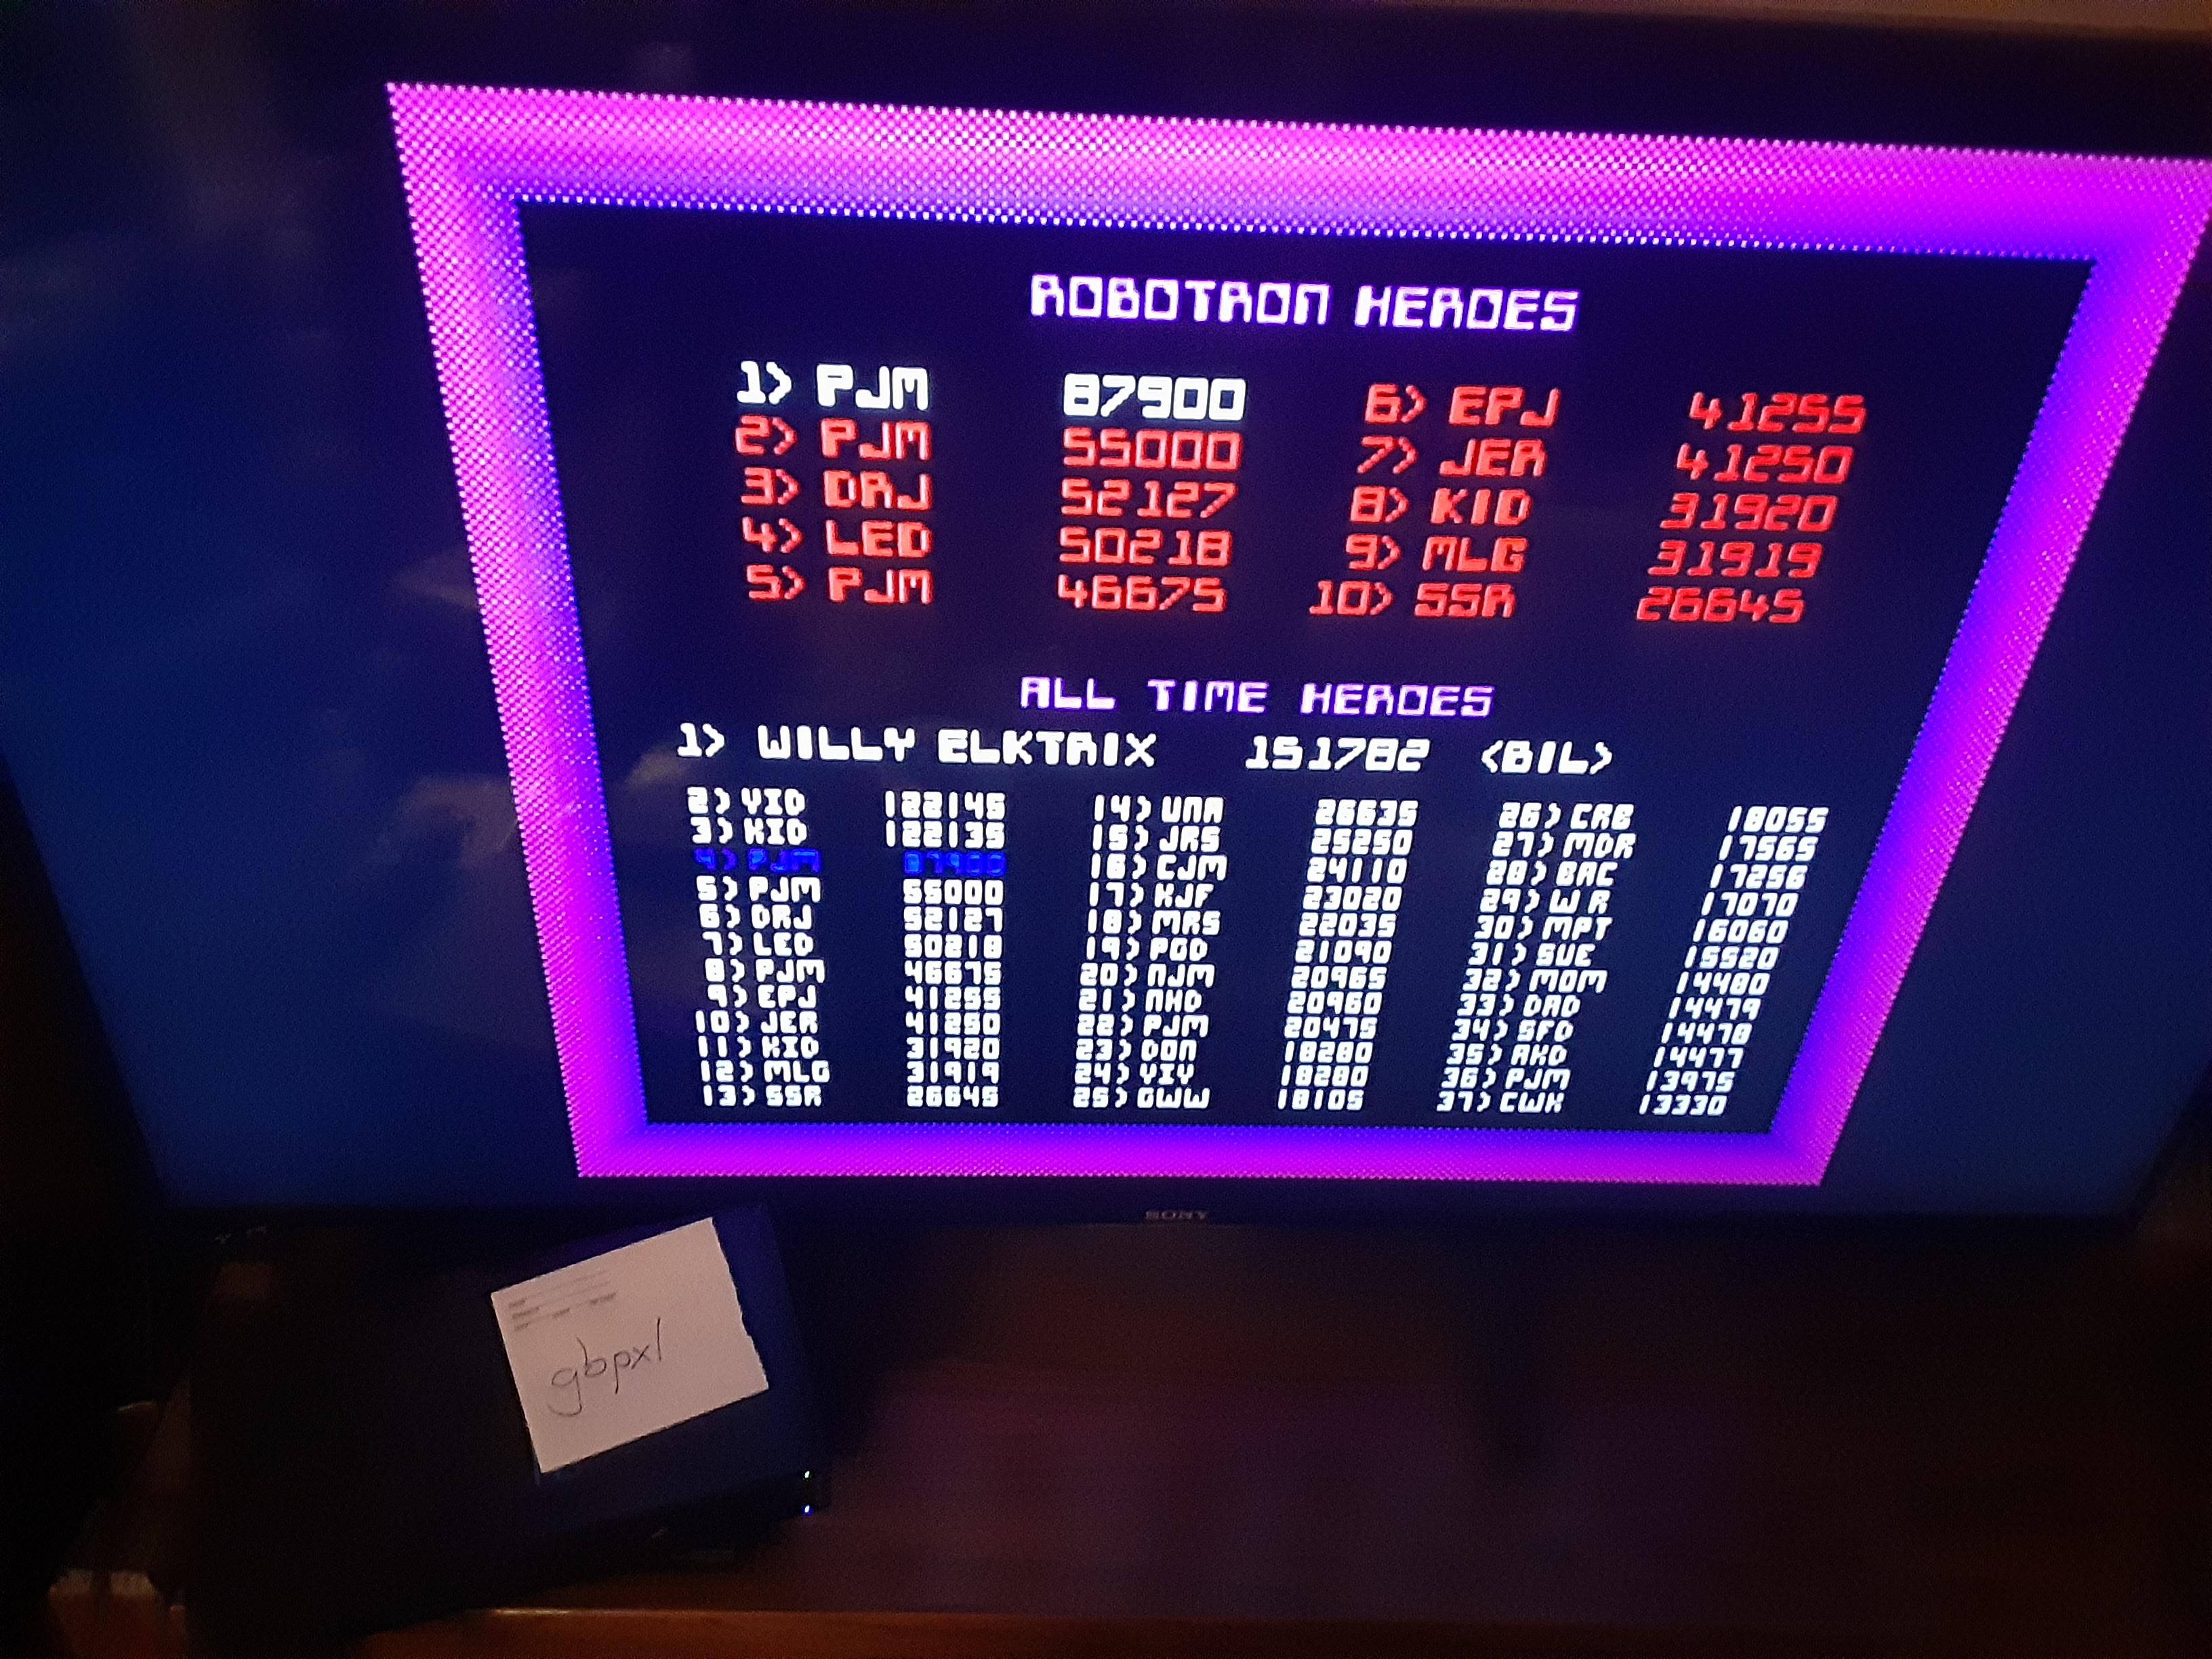 Midway Arcade Treasures: Robotron 2084 87,900 points